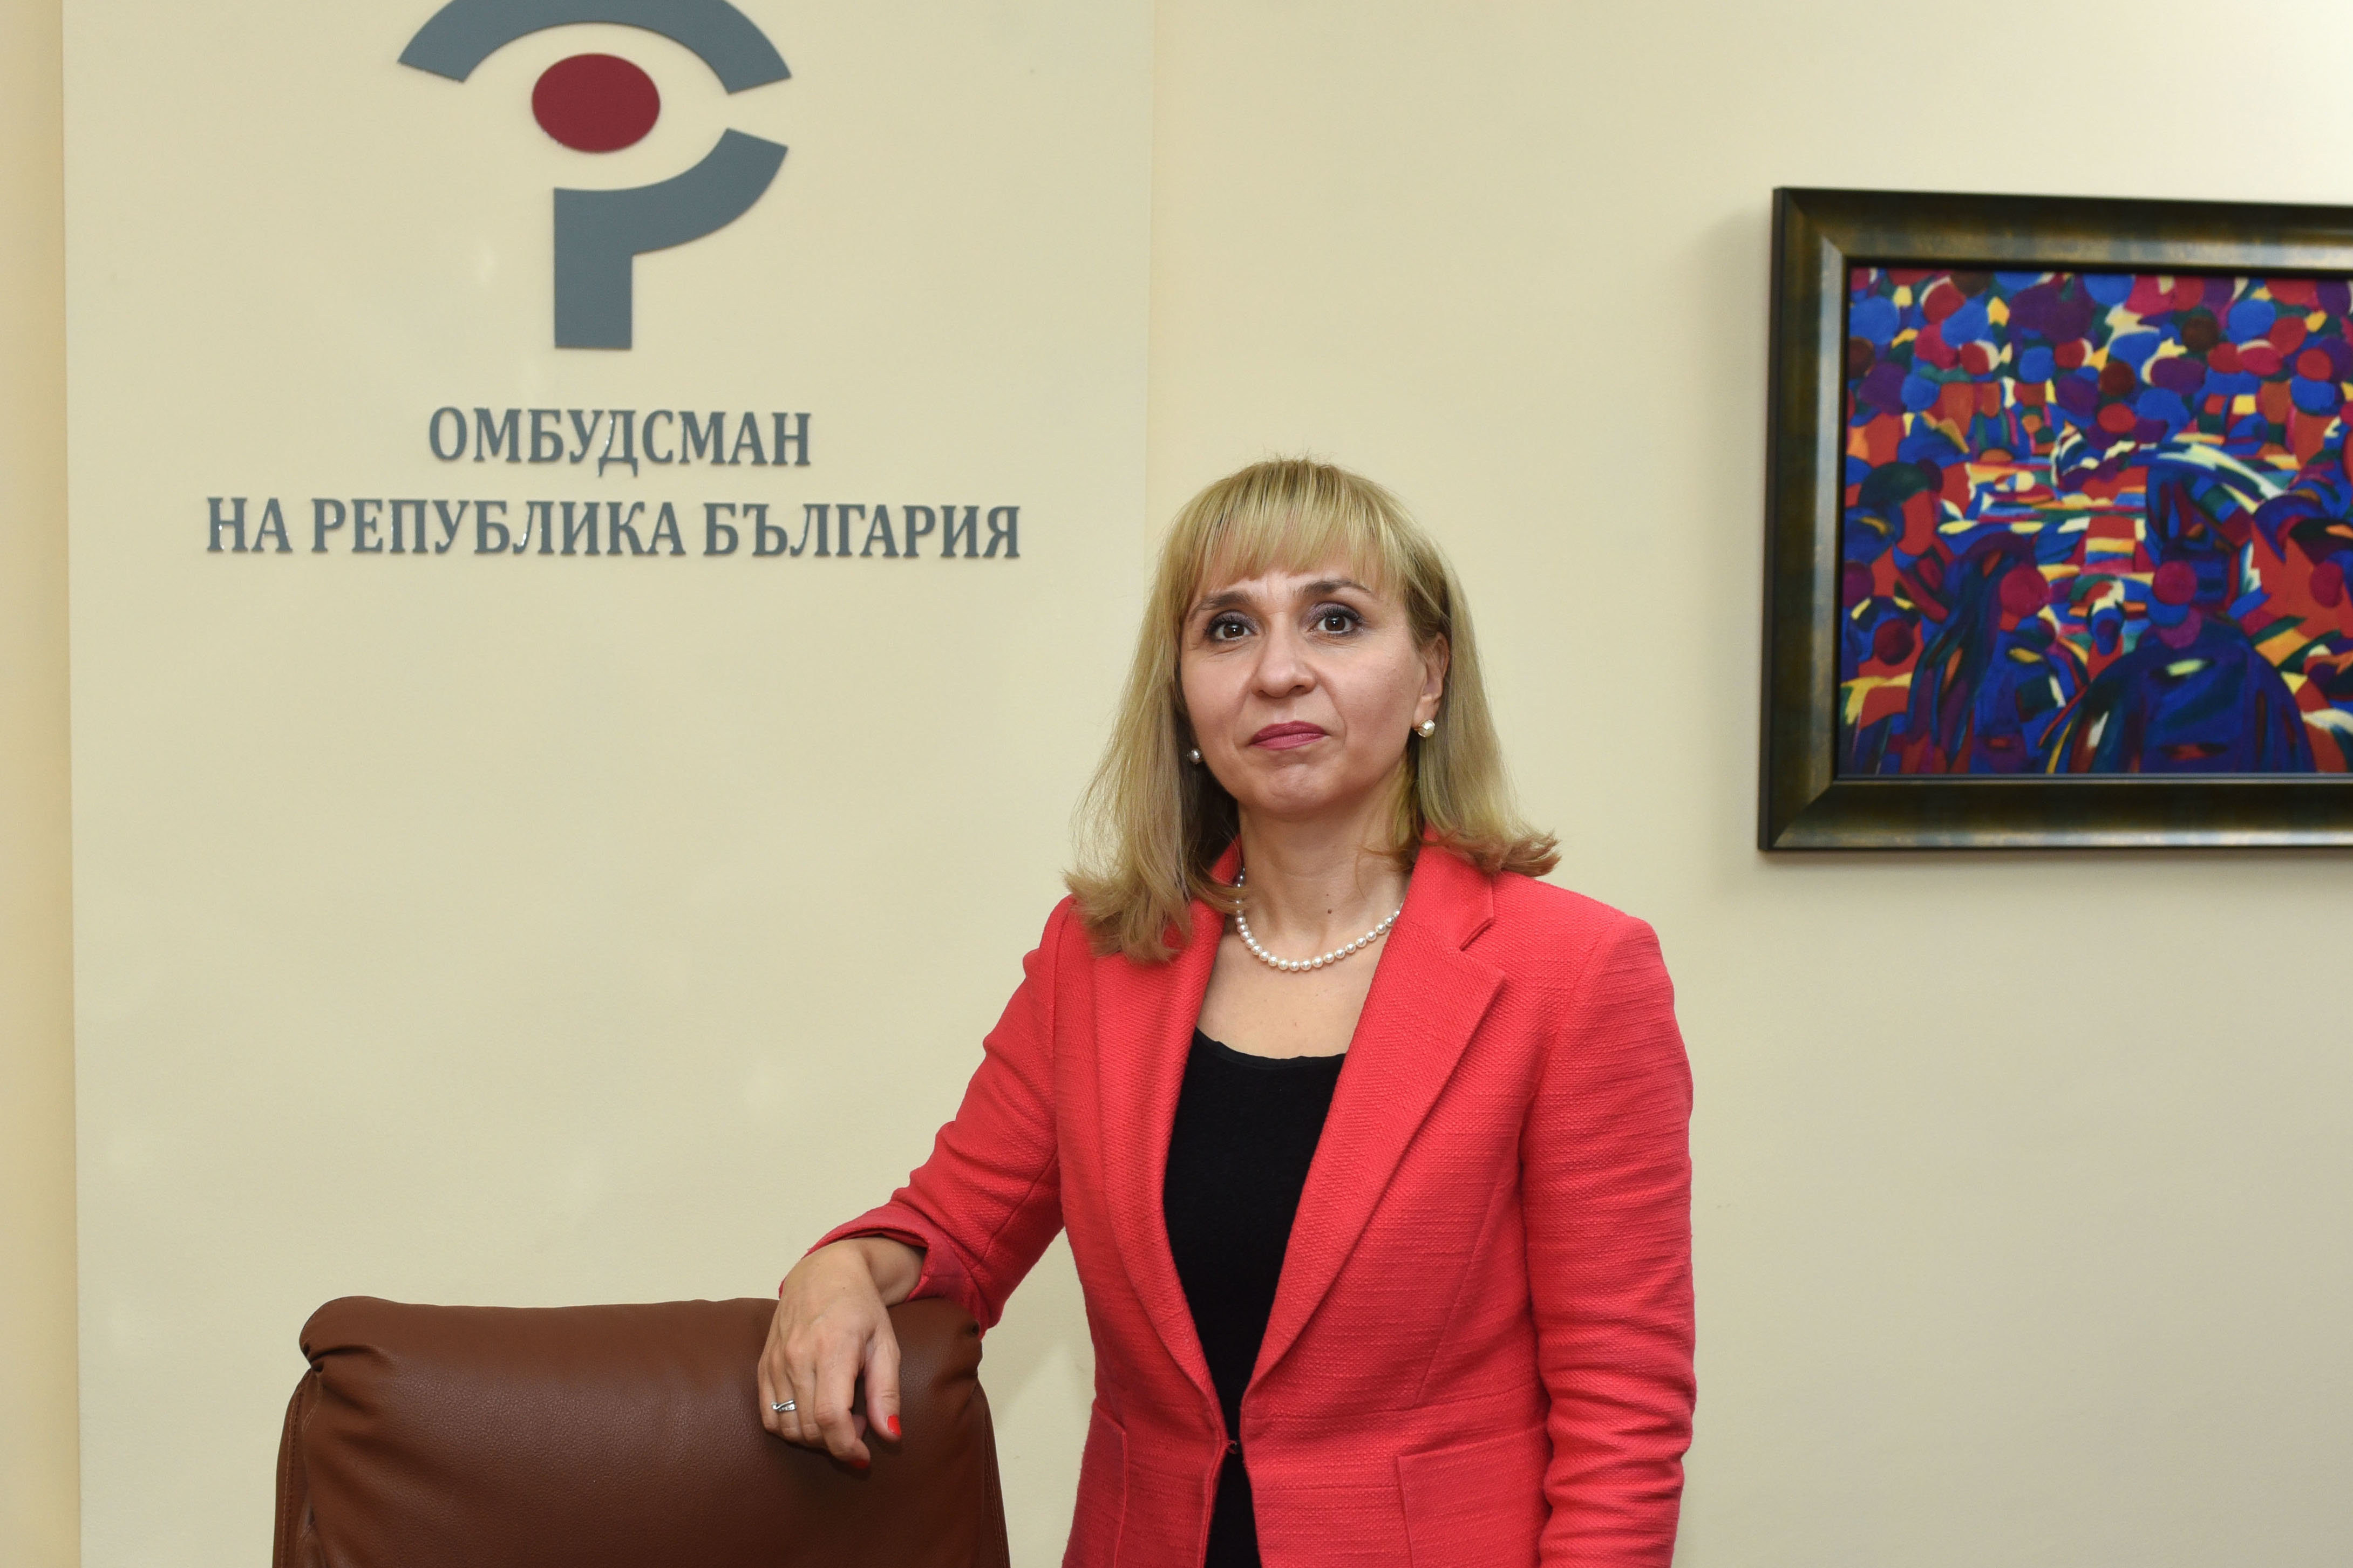 Омбудсманът доц Диана Ковачева изпрати писмо до председателката на Народното събрание Цвета